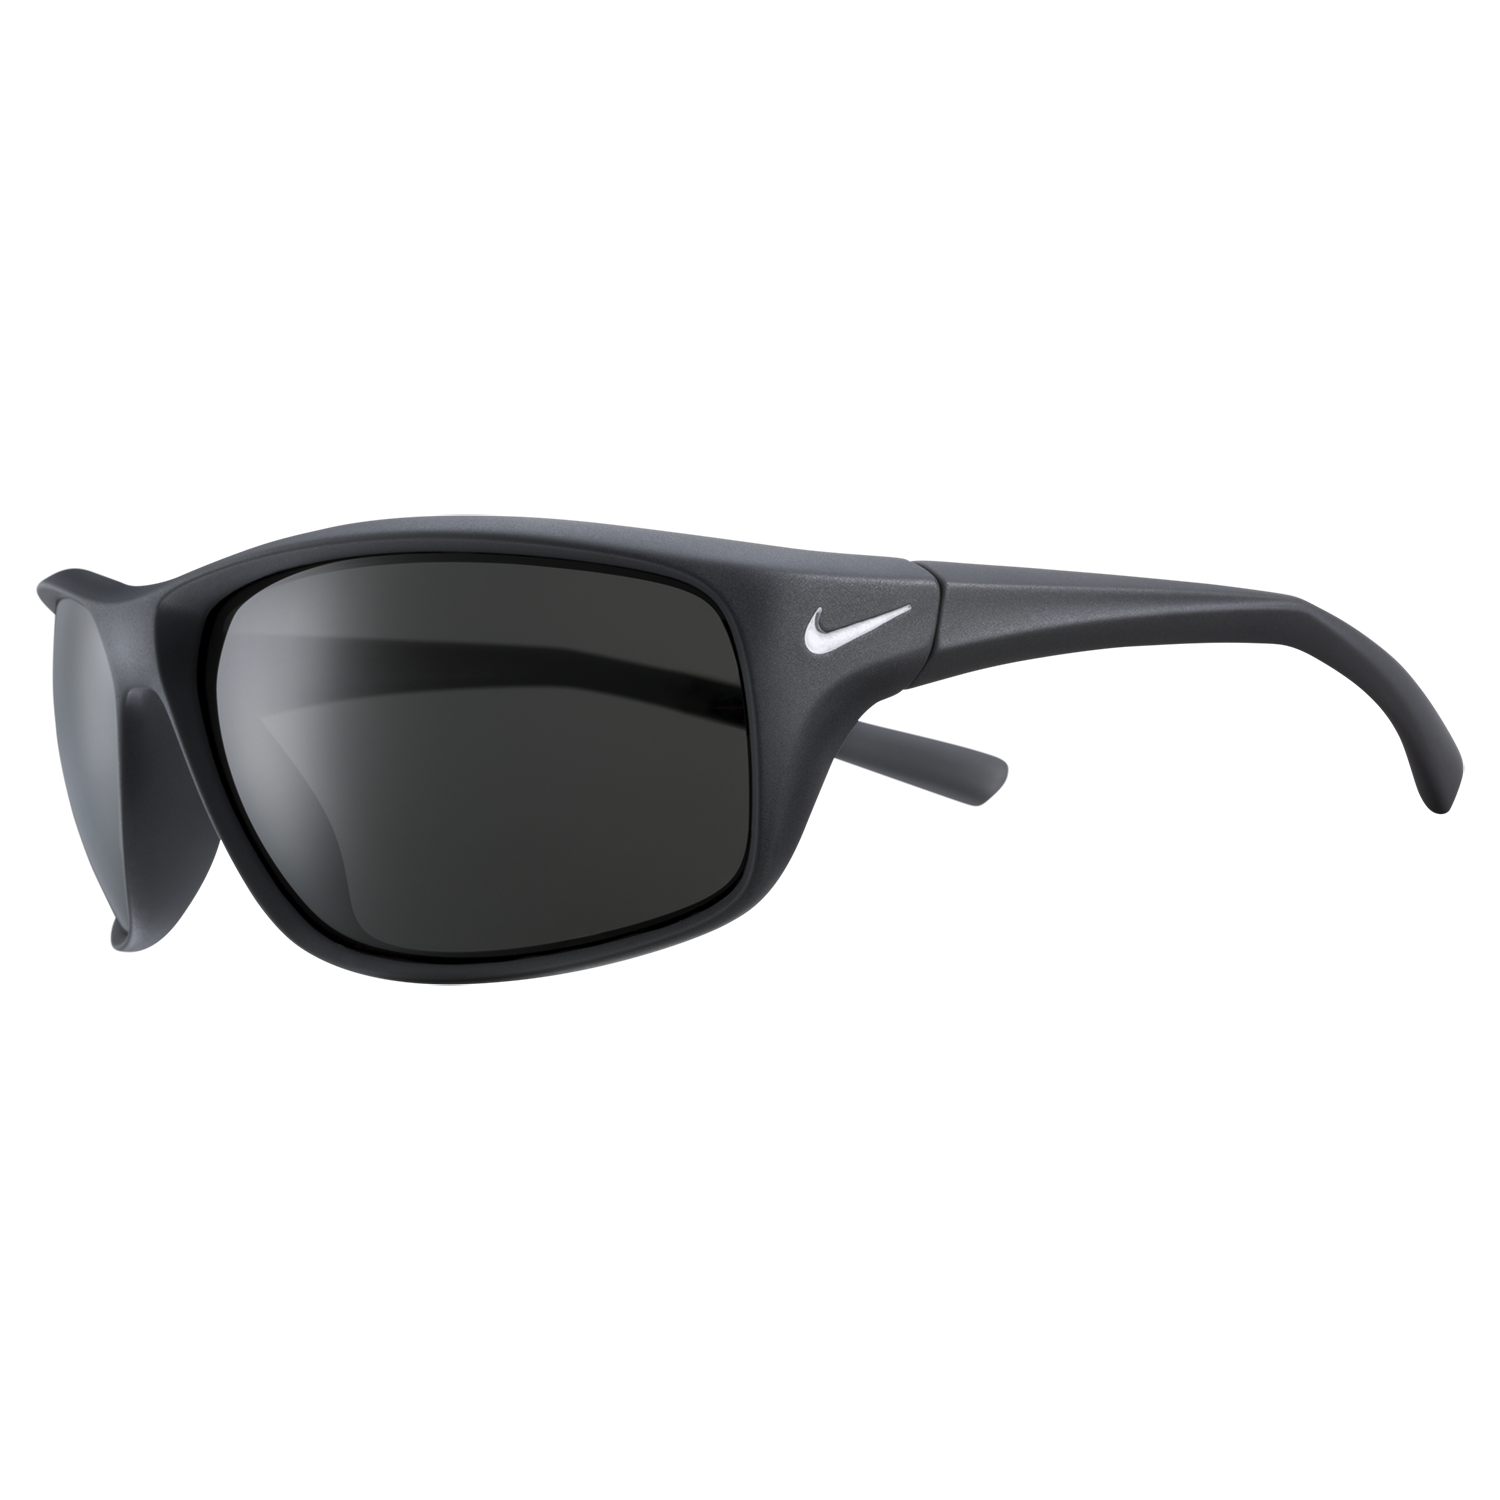 Buy Polarized Sunglasses for Men and Women Semi-Rimless Frame Driving Sun  glasses 100% UV Blocking Online at desertcartKUWAIT